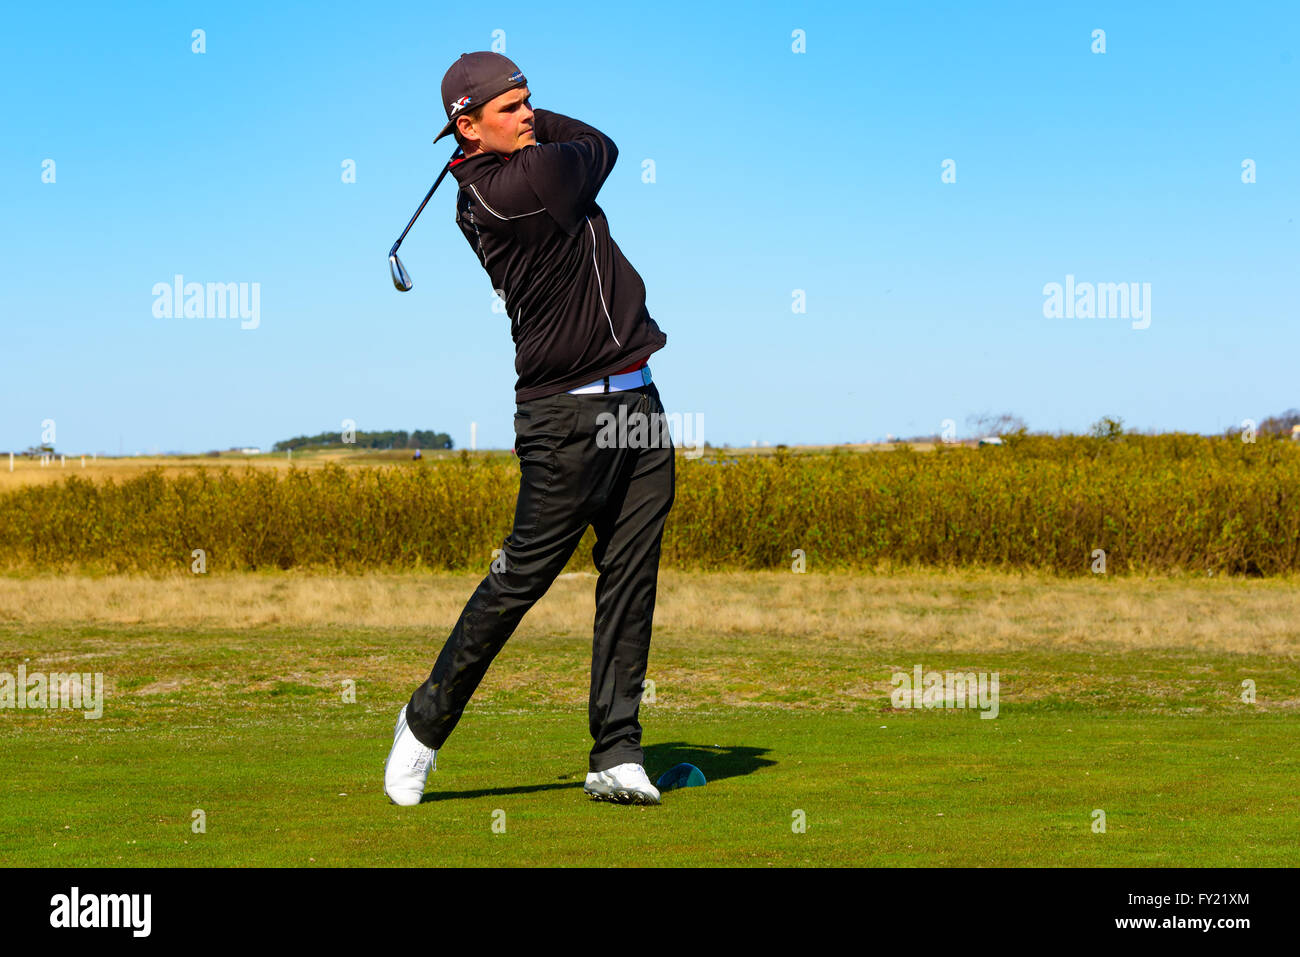 Skanor, Schweden - 11 April 2016: Männliche junge Erwachsene Golfspieler am Ende seiner Schwingen. Er ist ganz in schwarz gekleidet und tragen eine Kappe. Stockfoto